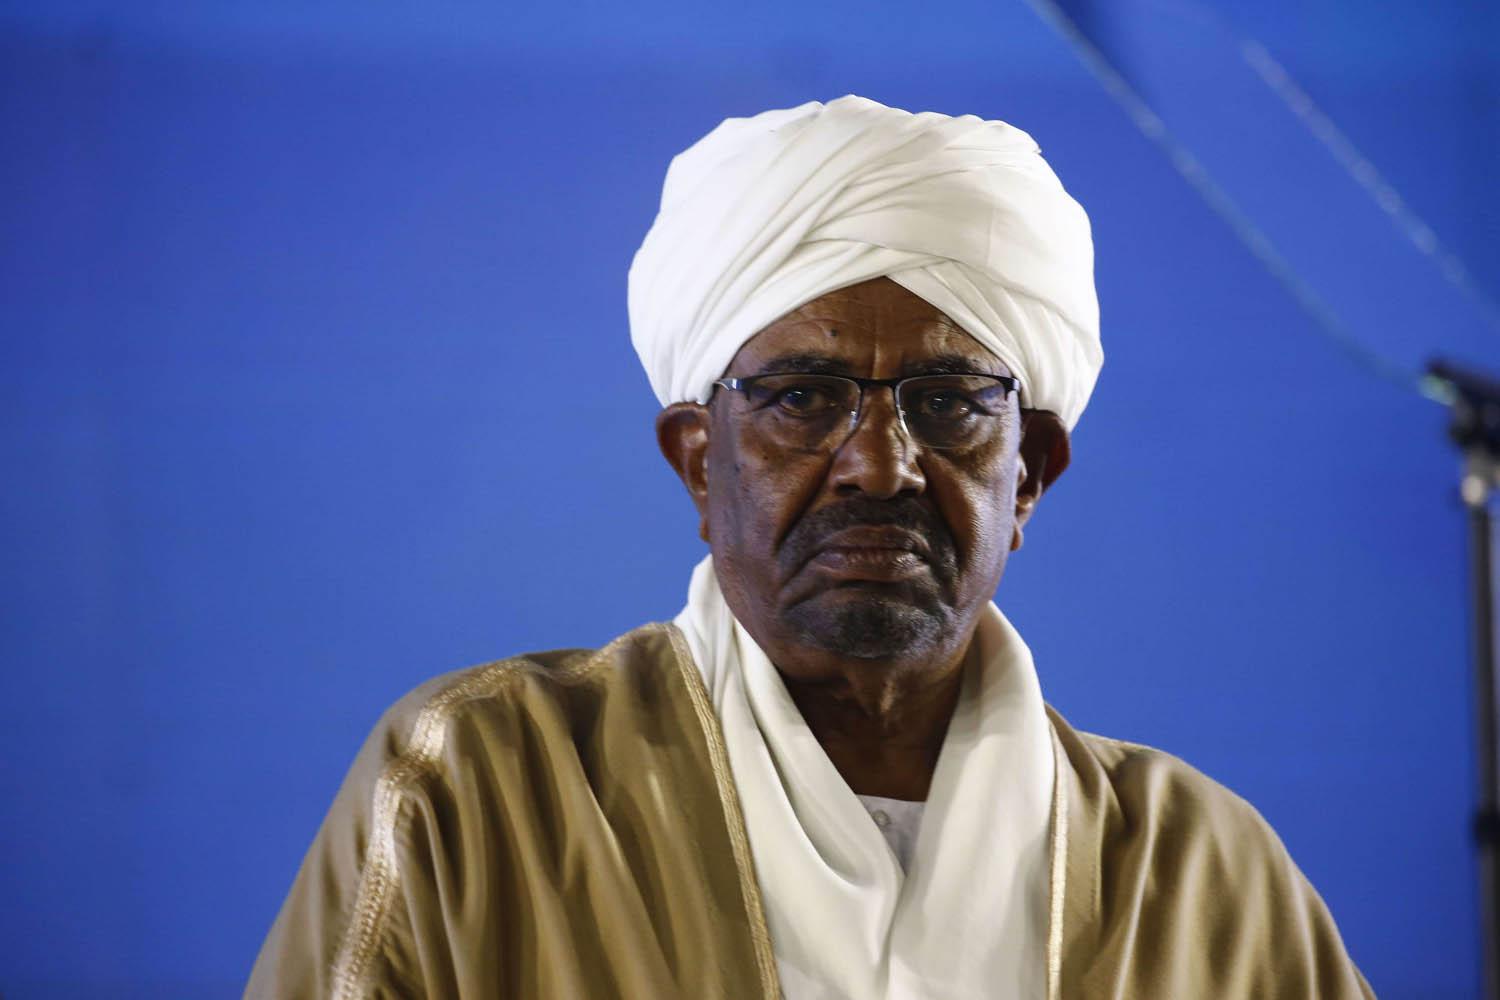 الرئيس السوداني عمر البشير يتحدث في عيد الاستقلال